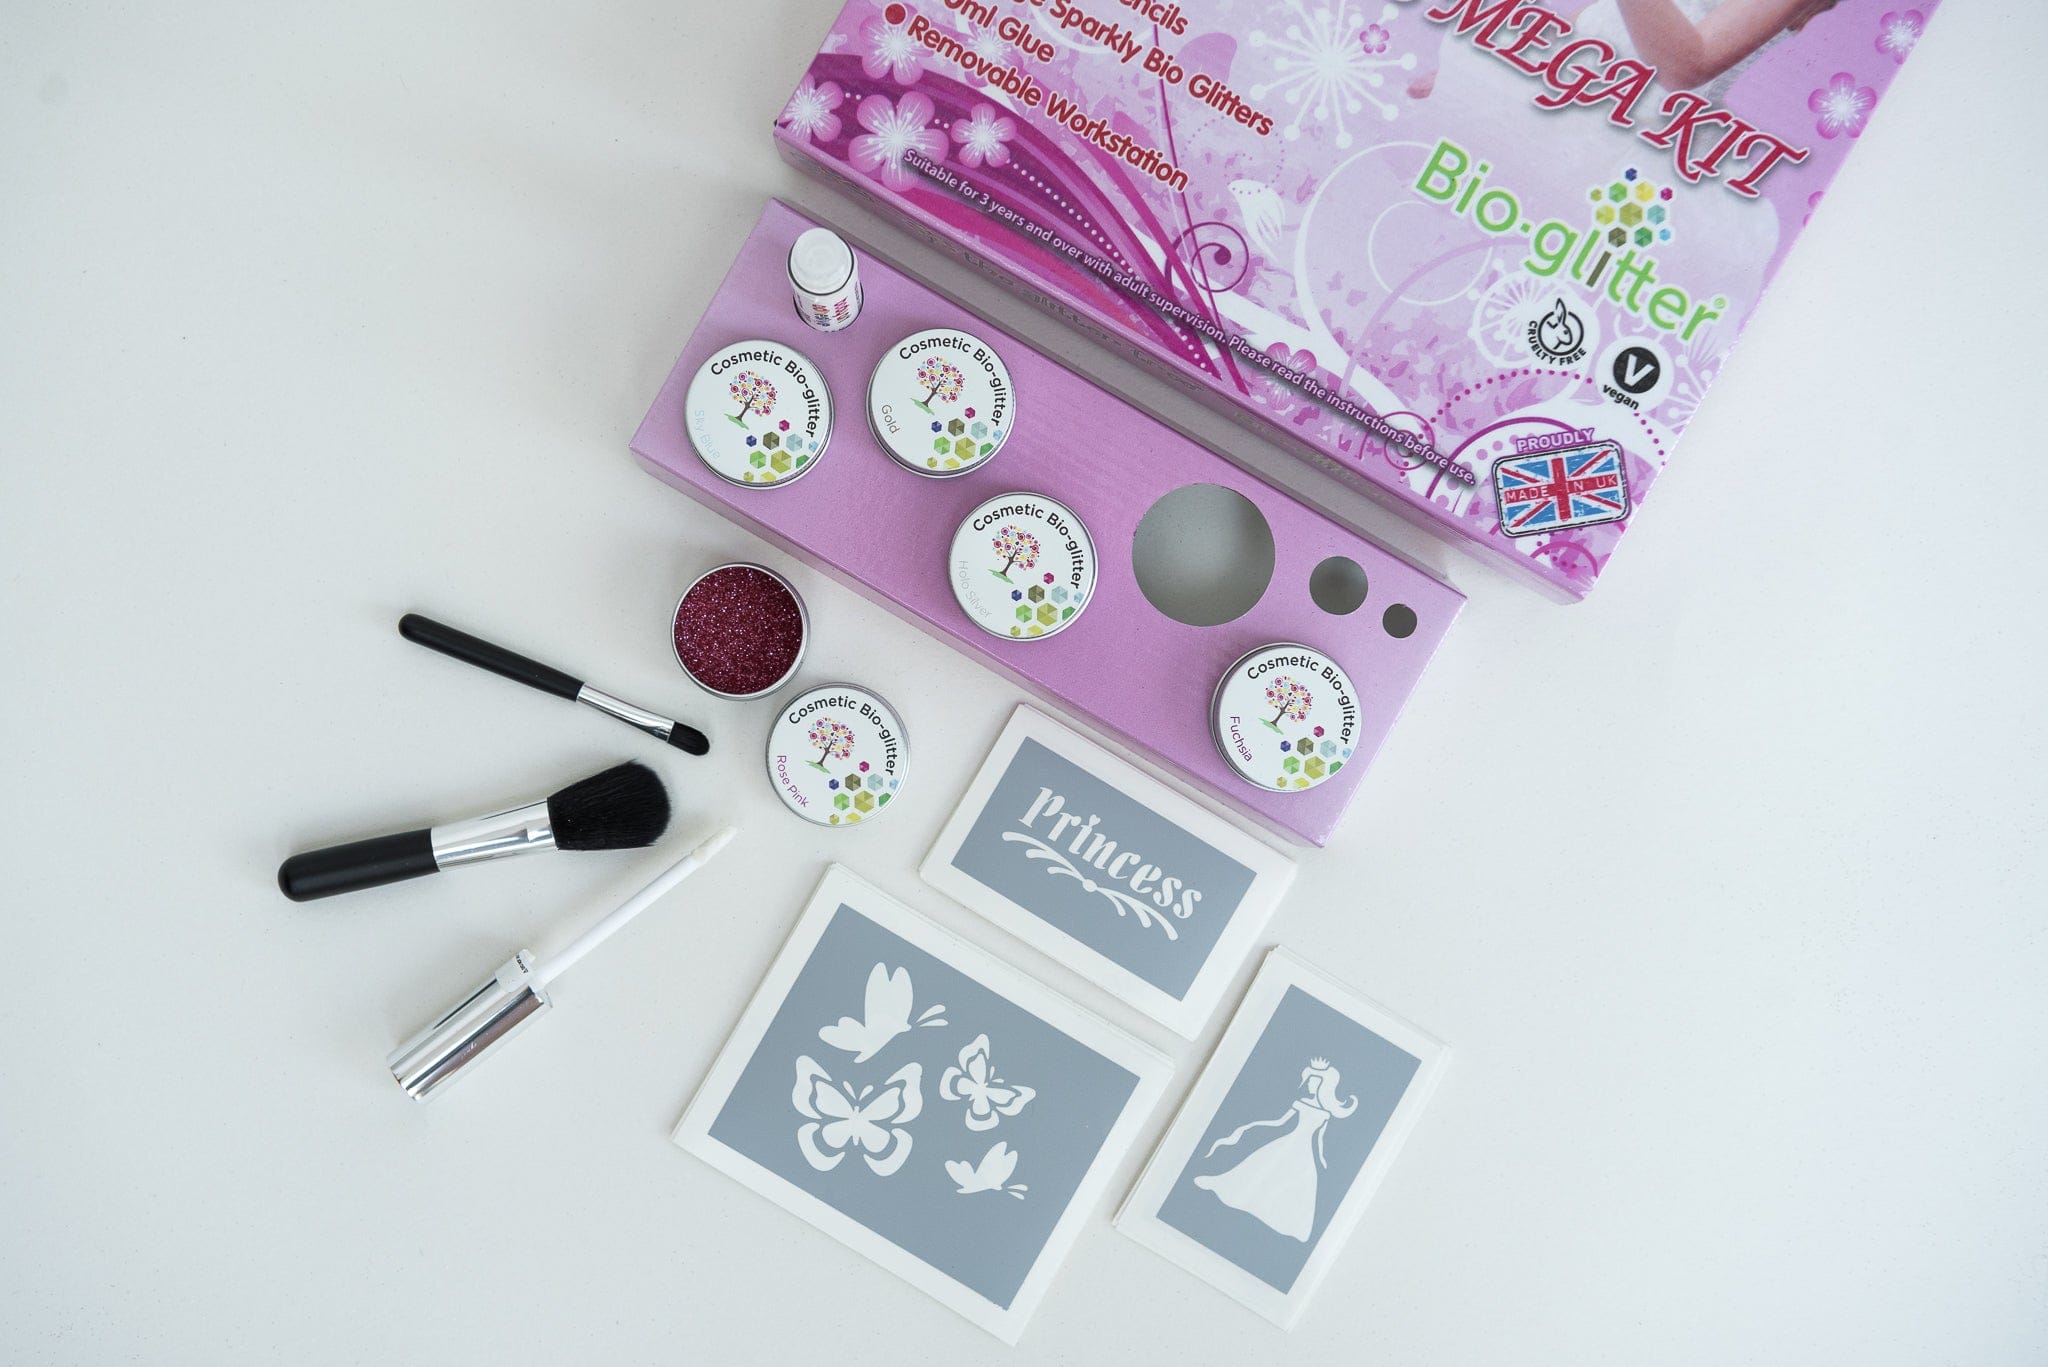 Princess fun glitter tattoo kit. Great value 36 stencil mega party pack.